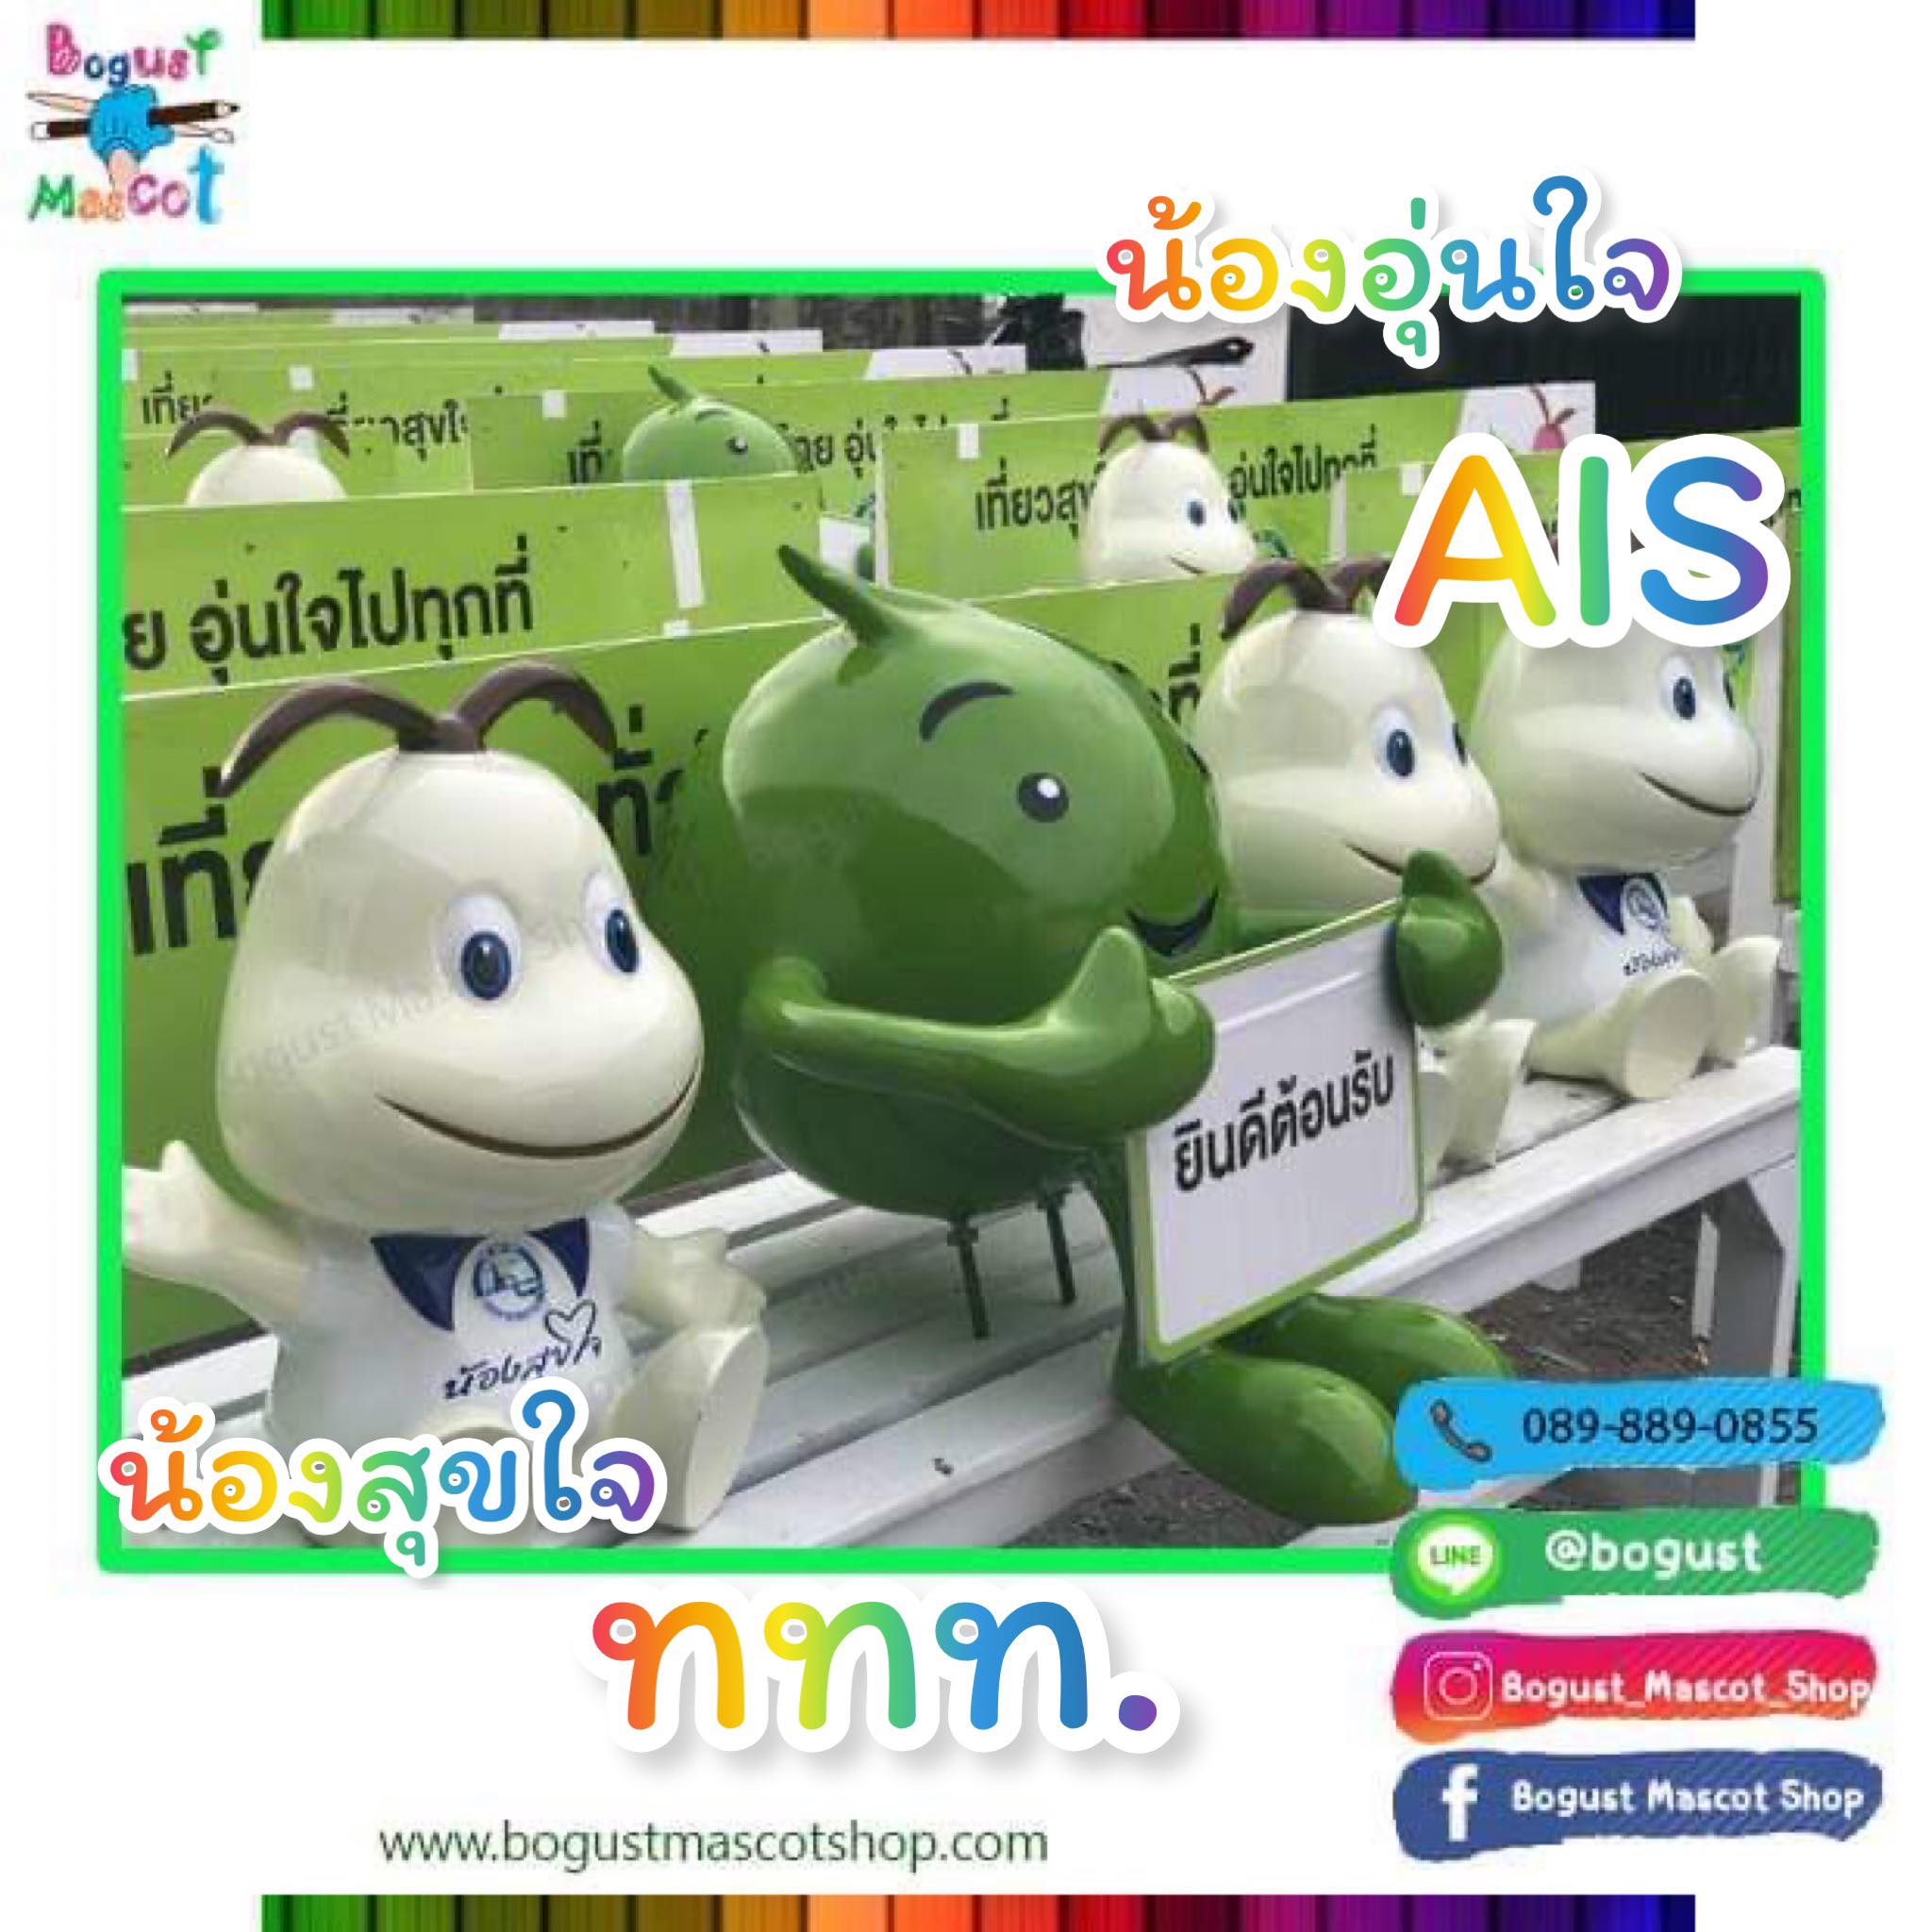 หุ่นตั้งไฟเบอร์กลาส (Mock up fiberglass ) --> น้องอุ่นใจ,น้องสุขใจ, AIS,การท่องเที่ยวแห่งประเทศไทย,ททท